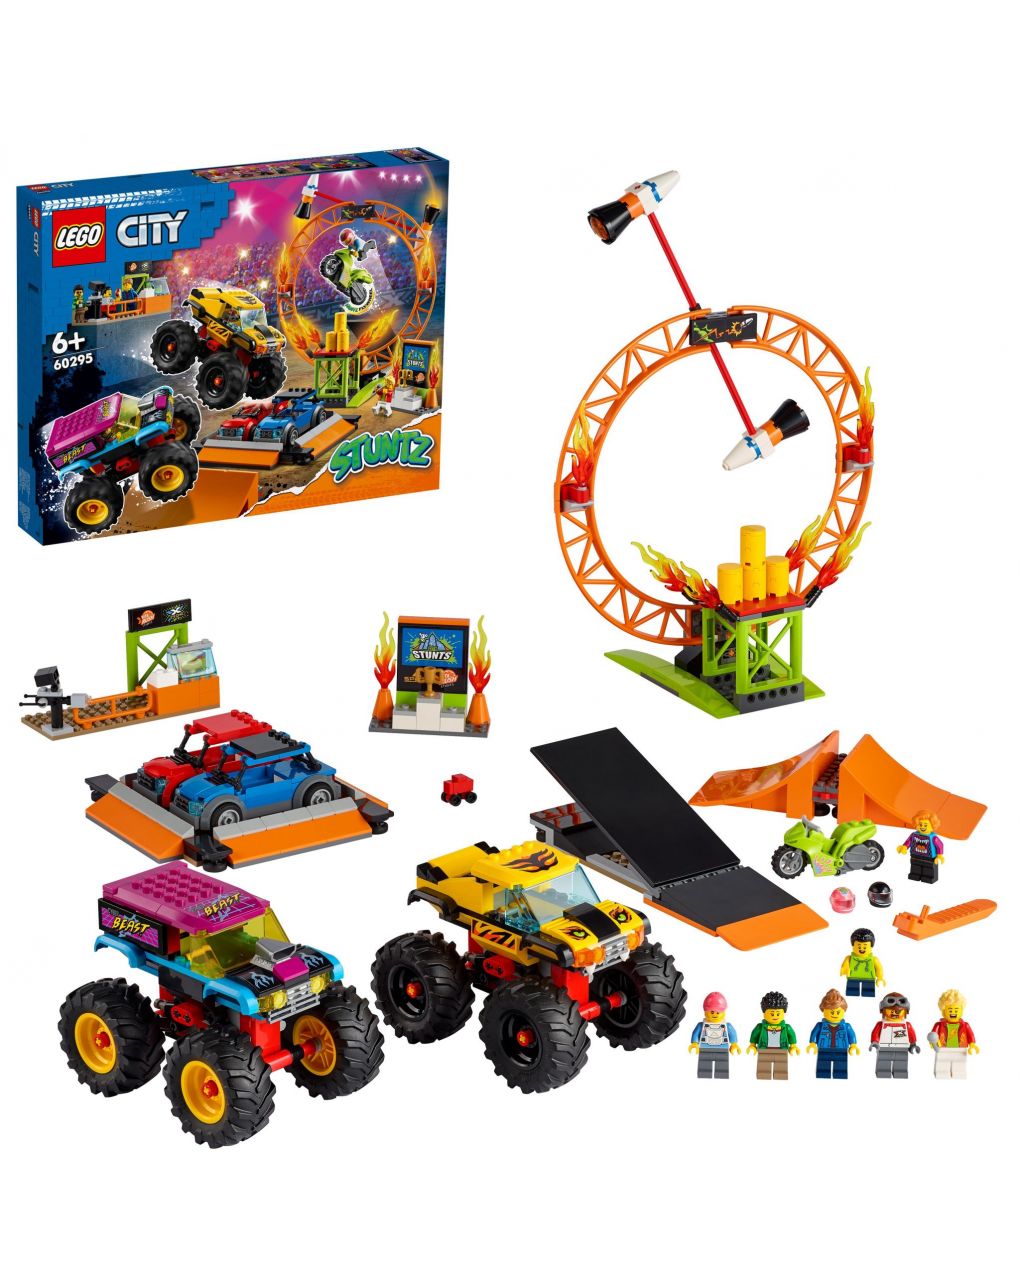 Lego city stuntz - arena dello stunt show - 60295 - LEGO